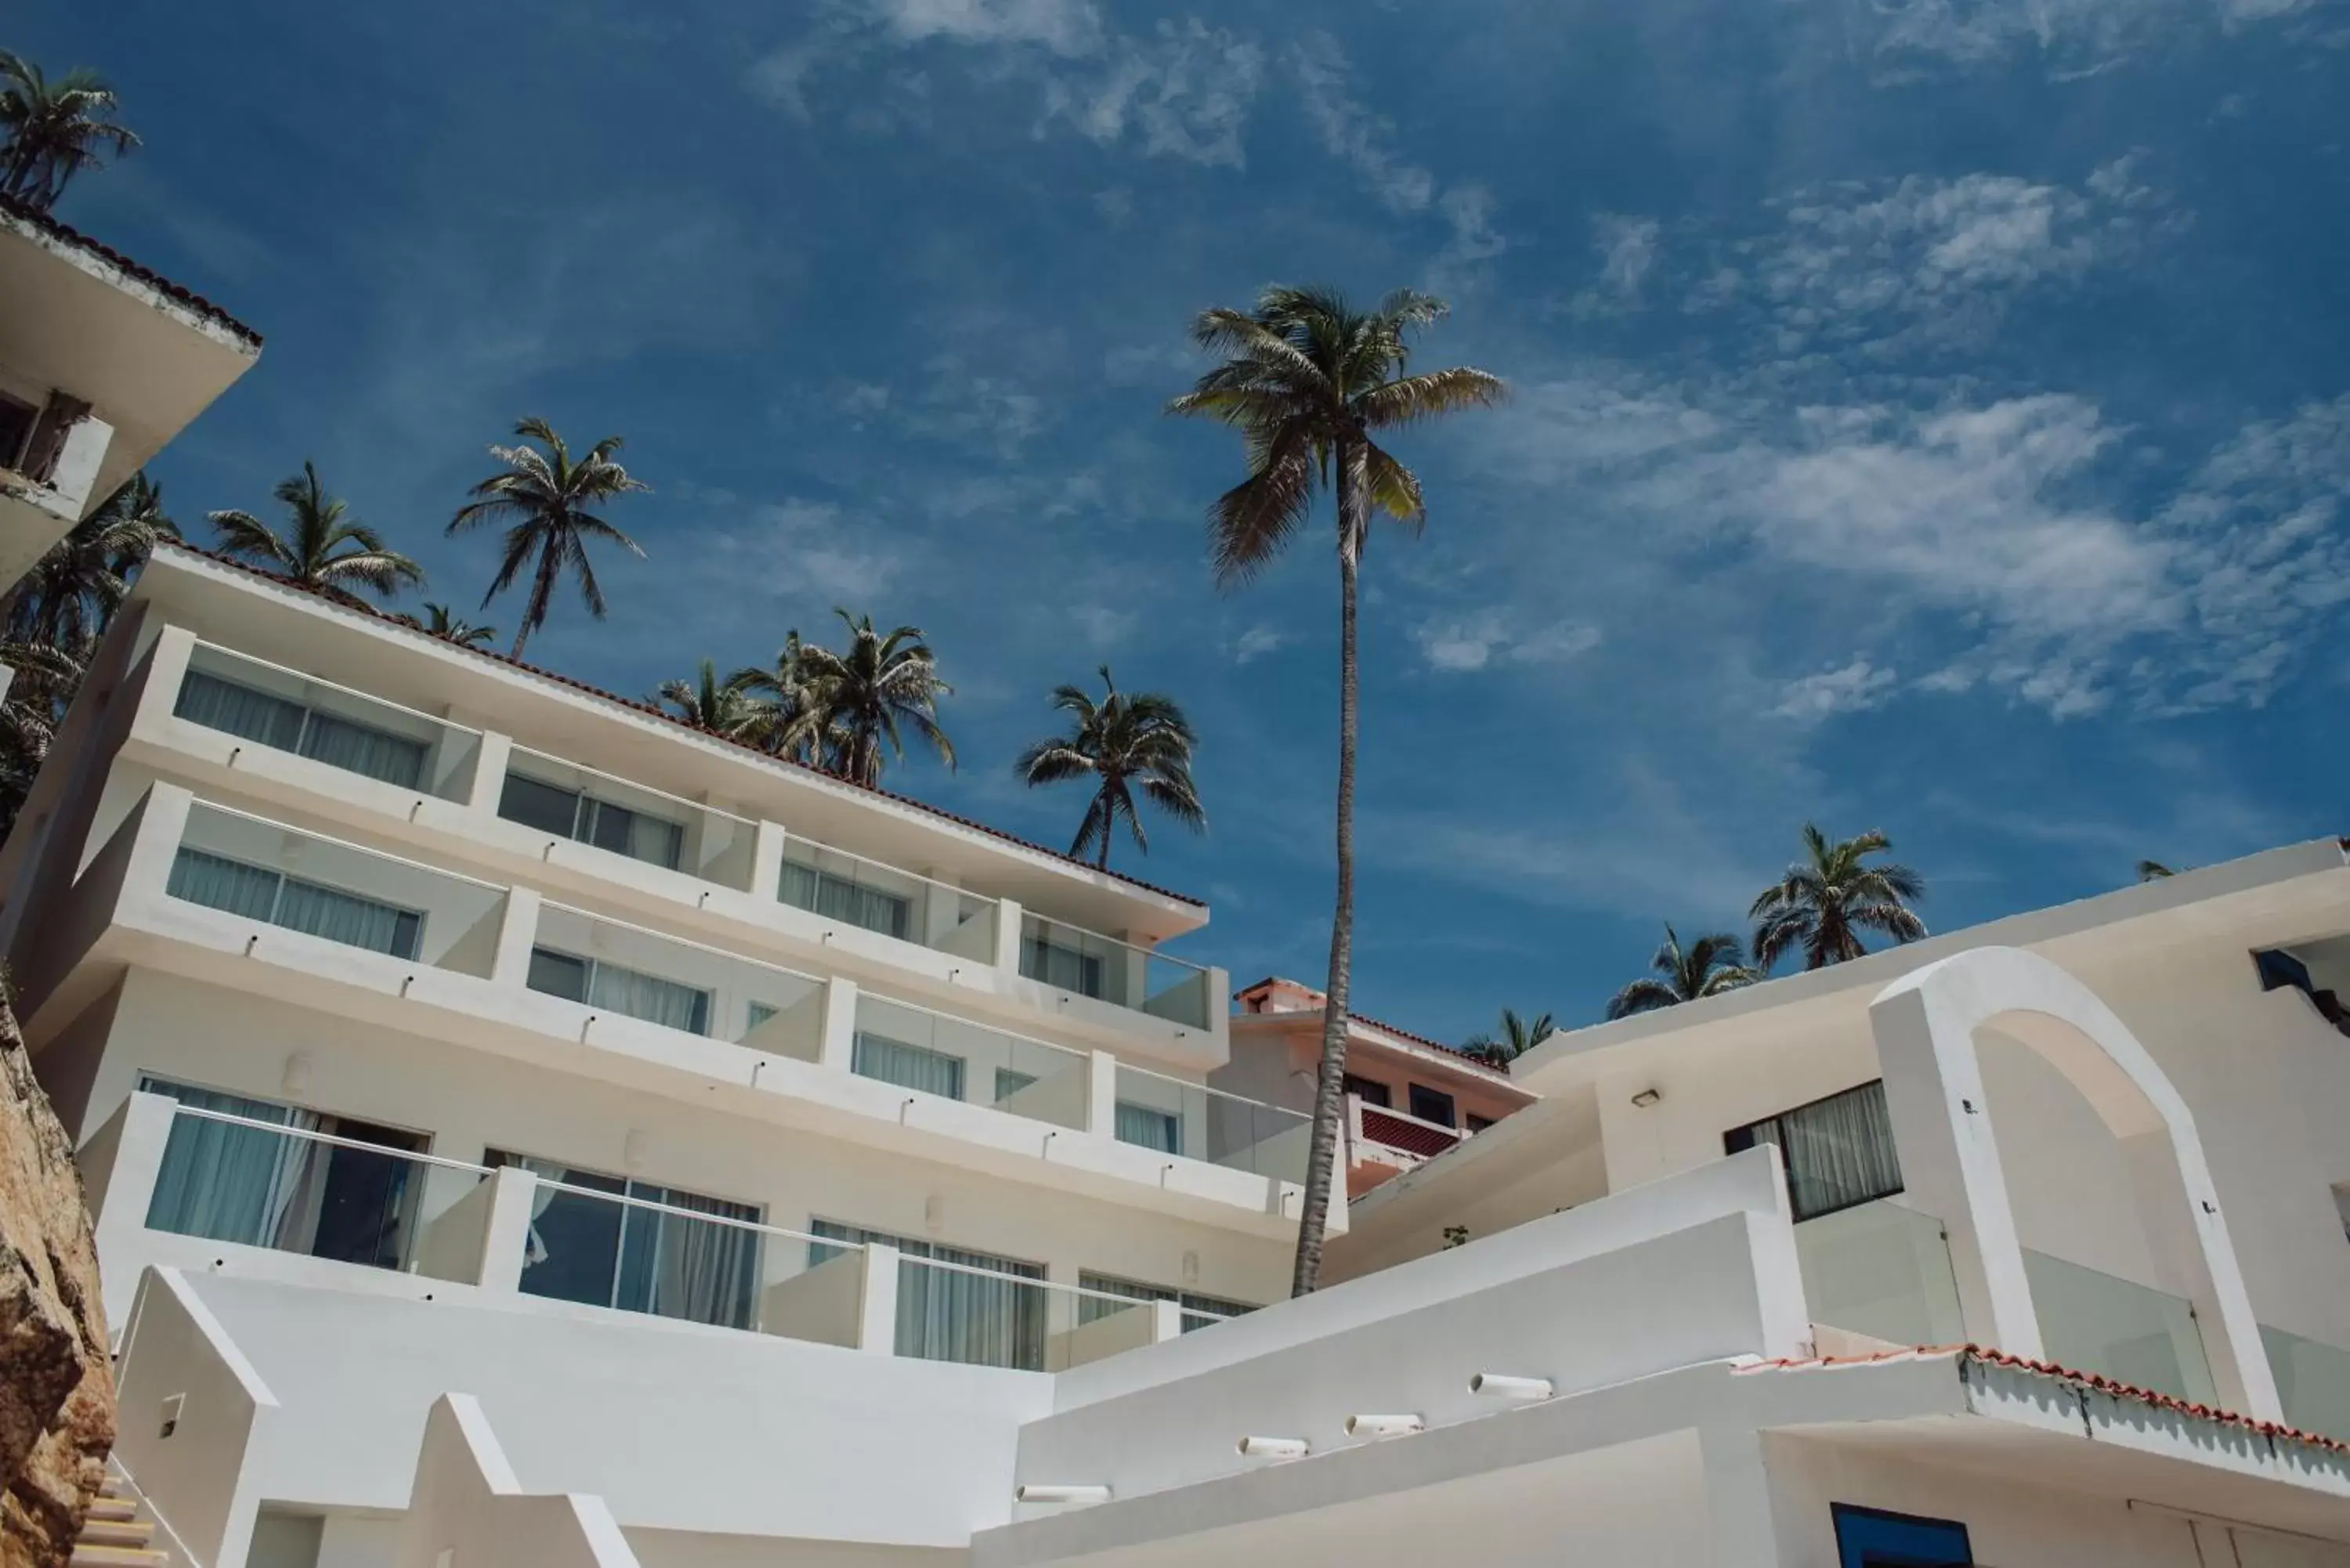 Area and facilities, Property Building in Mirador Acapulco